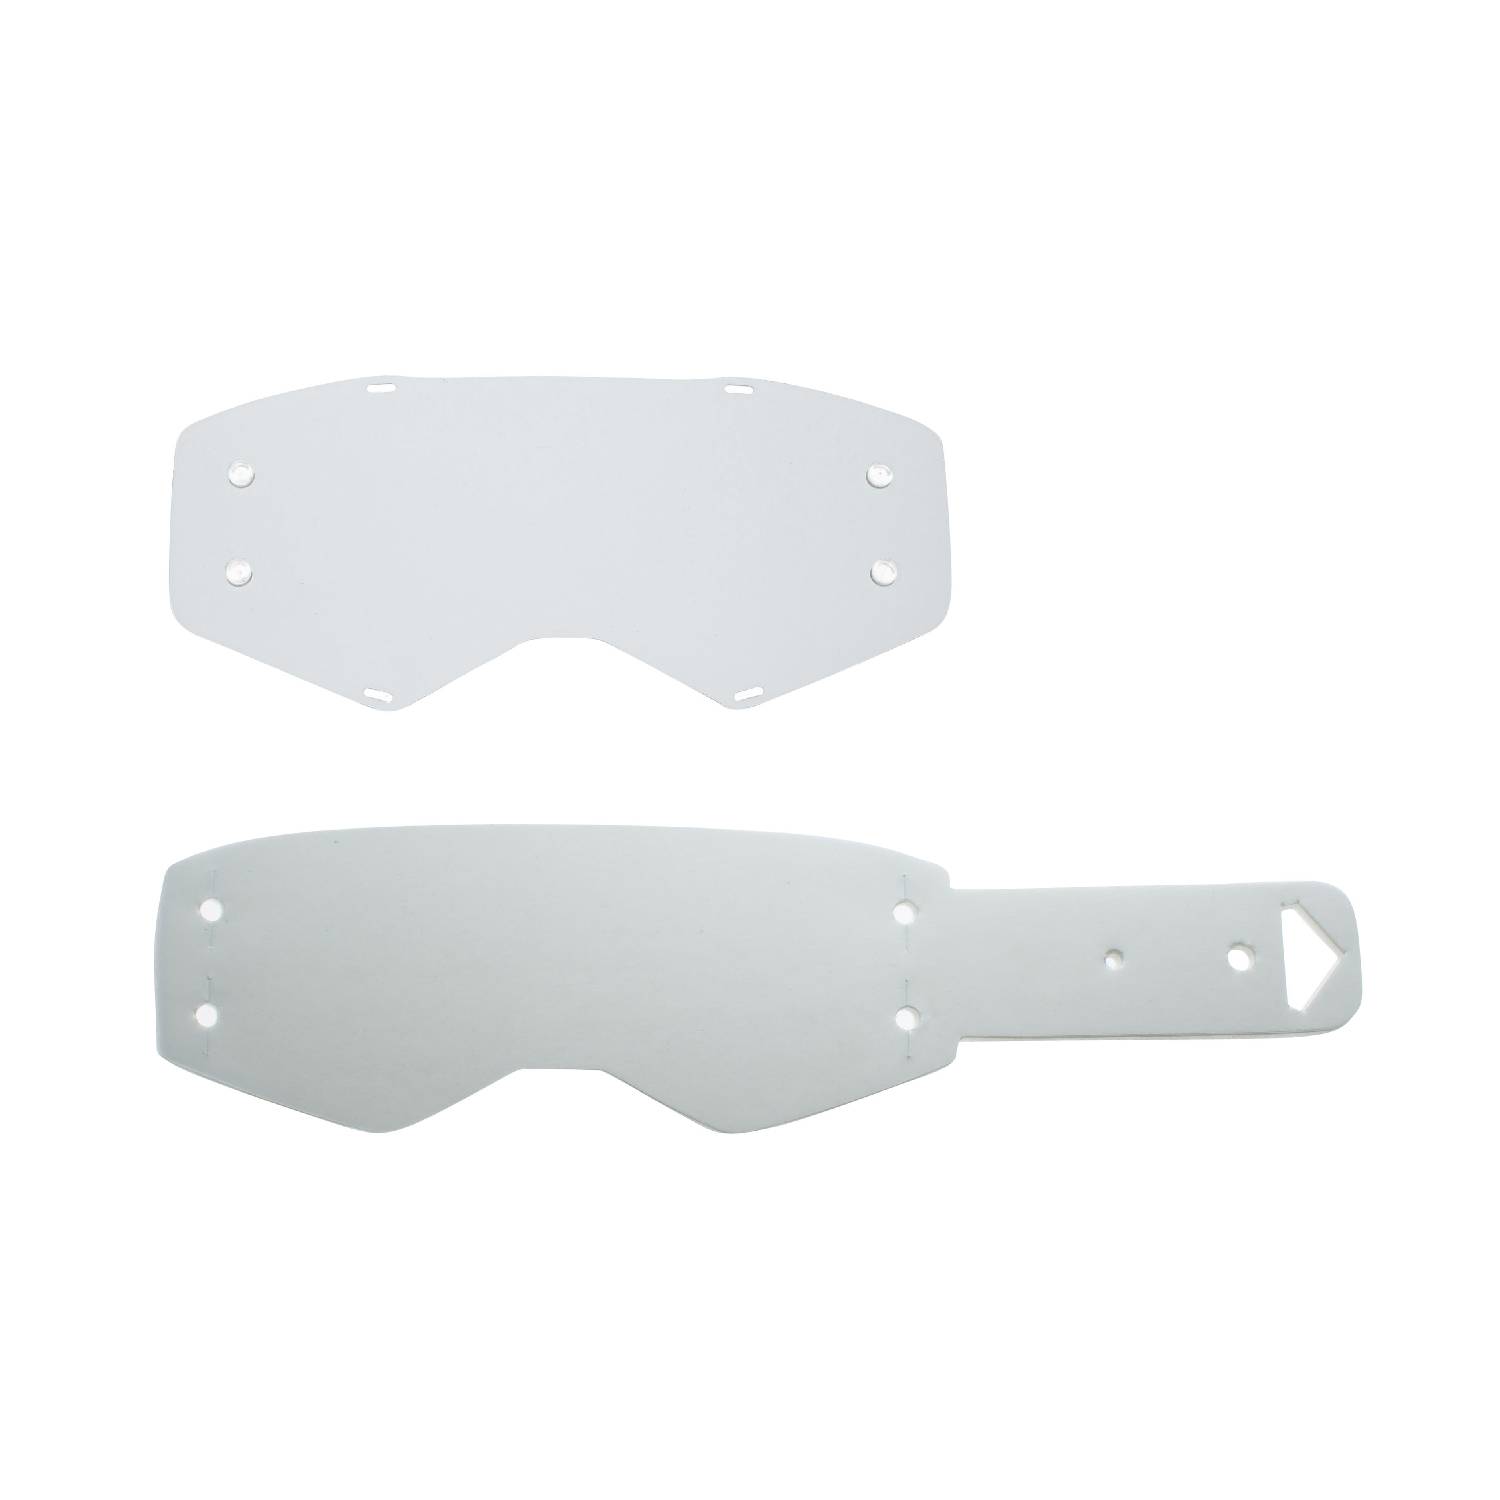 Lente trasparente + 10 Strappi (combo) compatibile per occhiale/maschera Scott Prospect/Fury